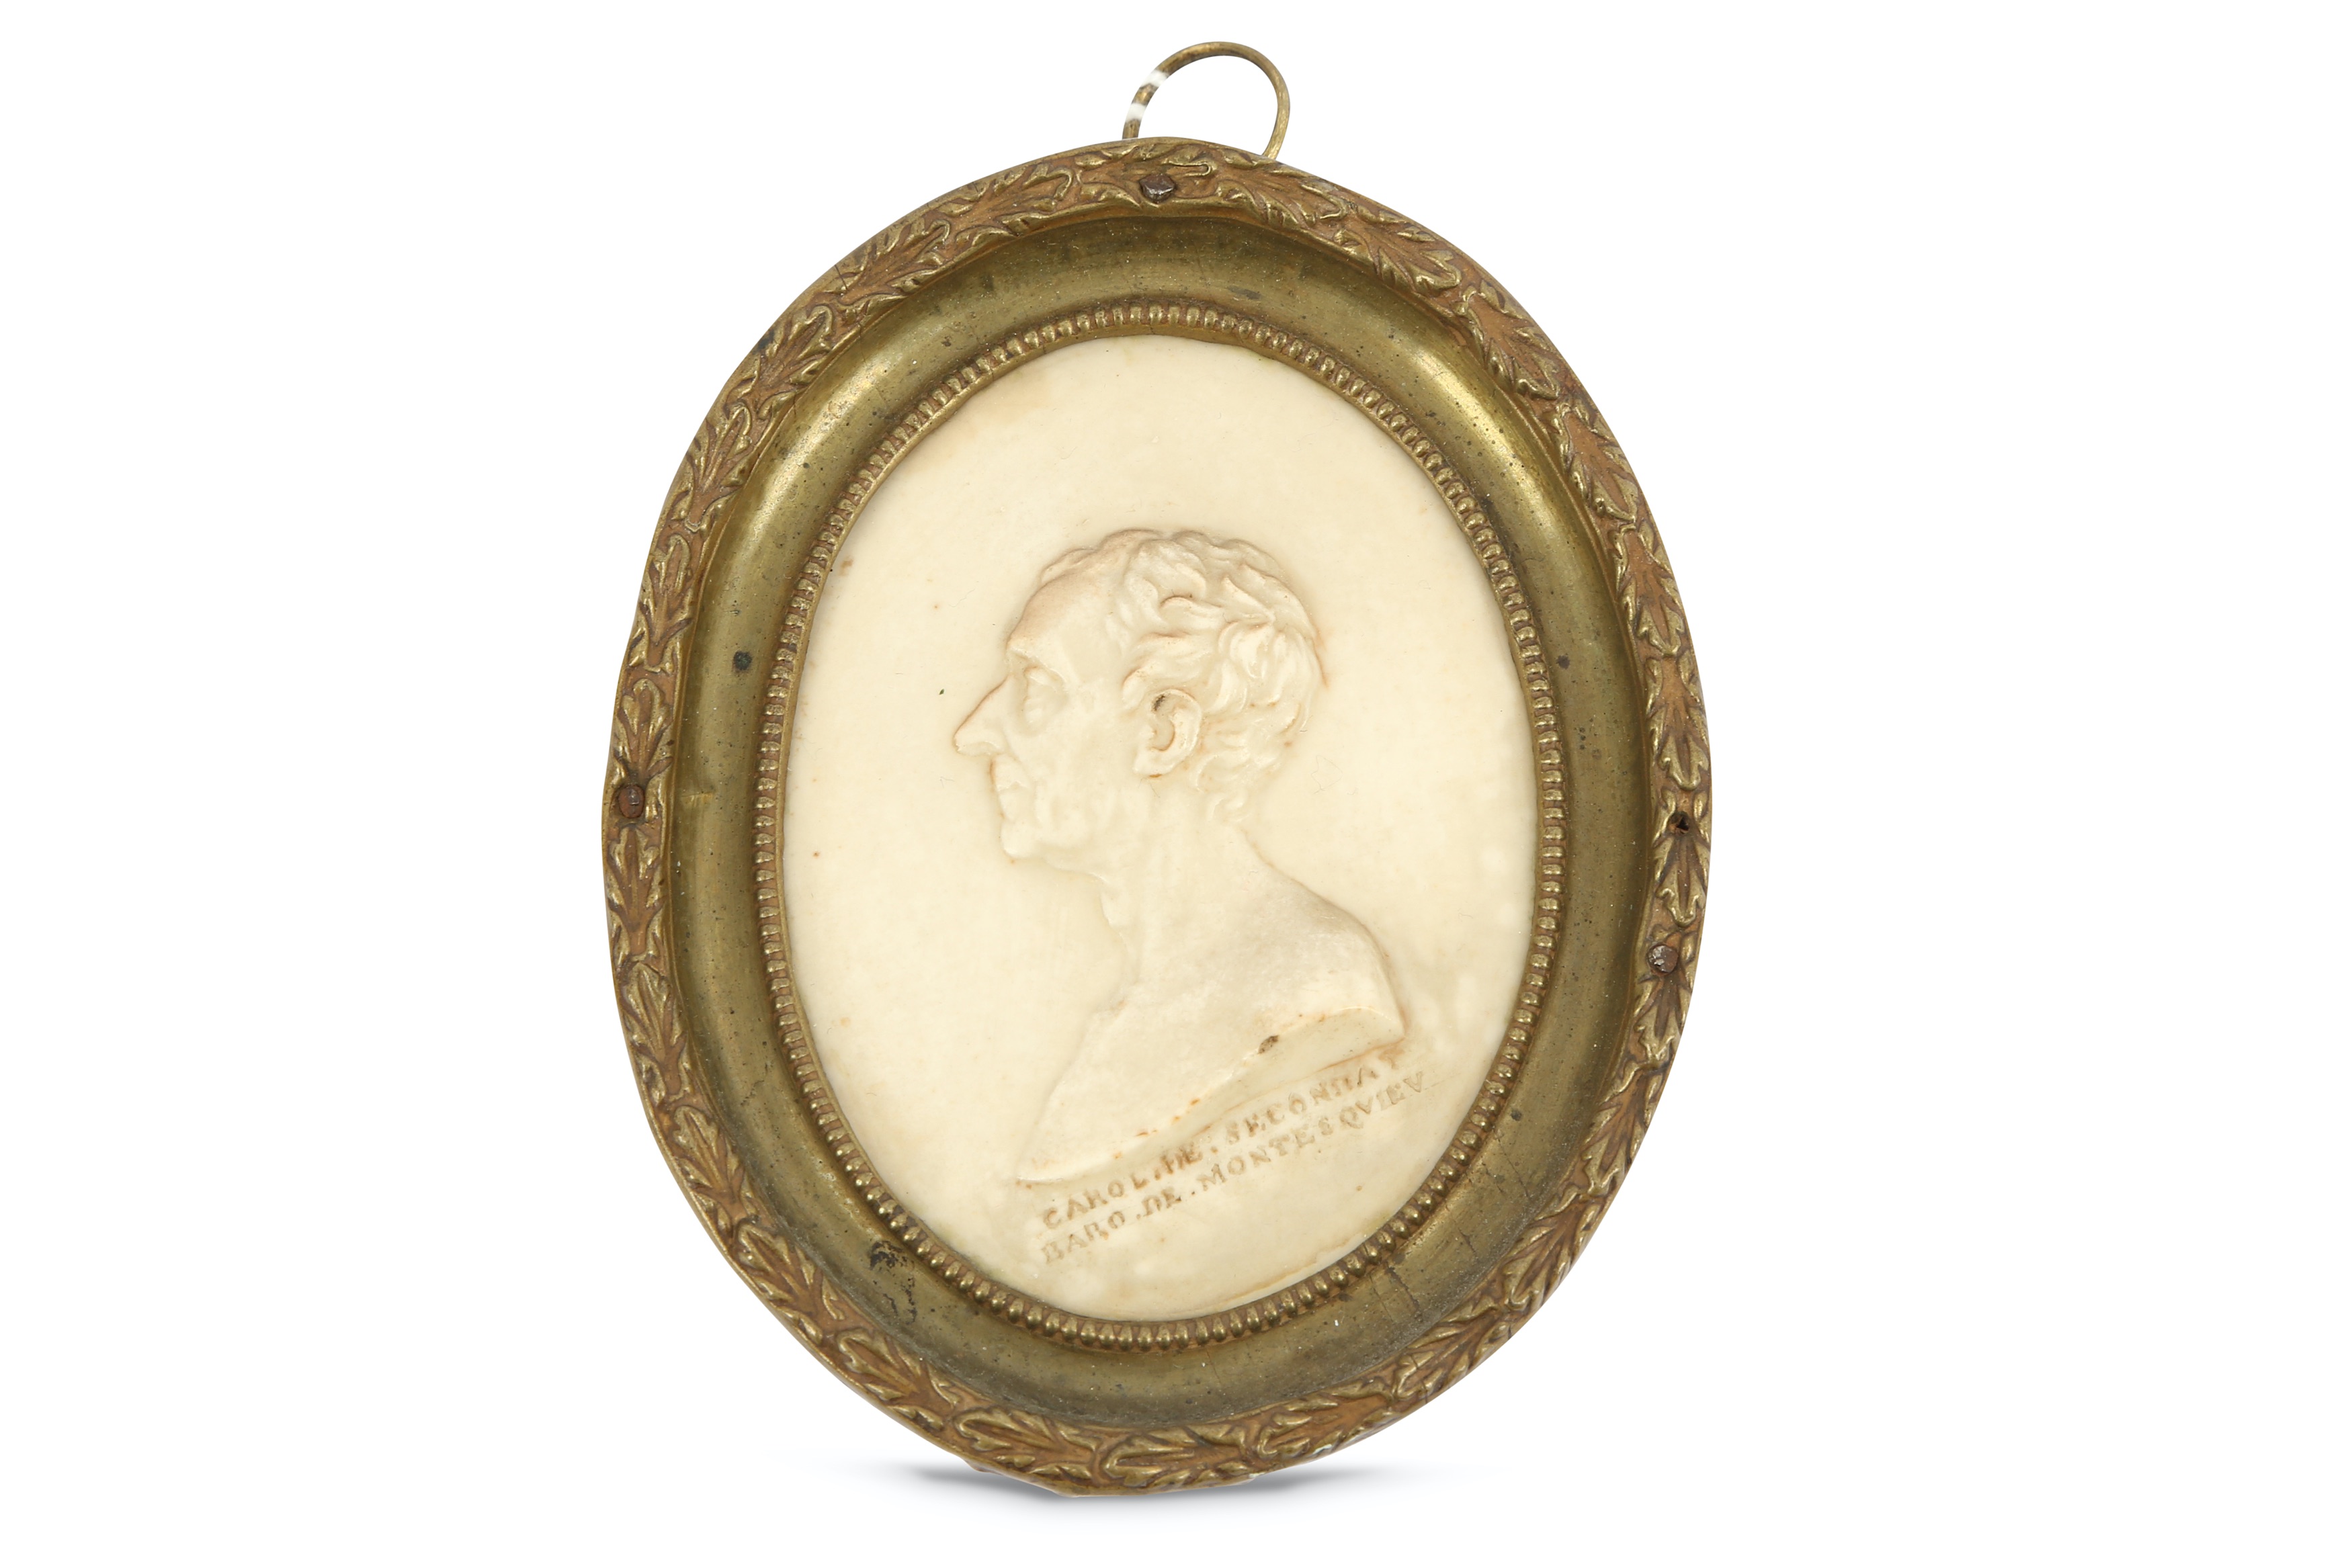 A 19th Century oval miniature depiction of Charles de Secondat, Baron de Montesquieu, after Edward